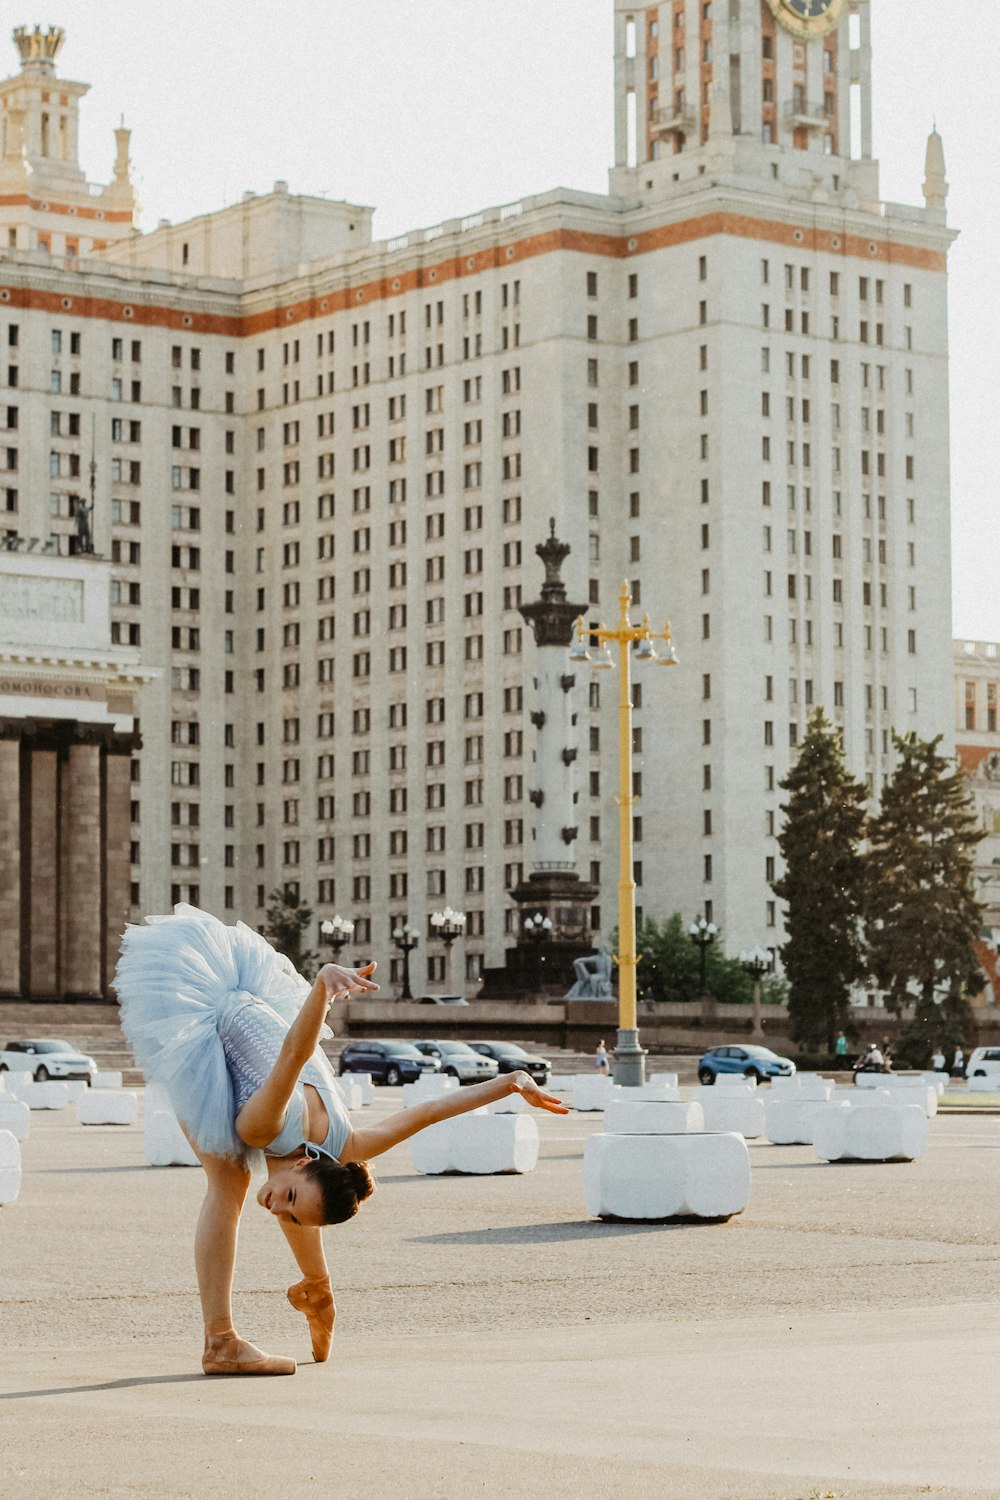 Udelukke Antagonisme Rodet ballerina dancing near white concrete building during daytime photo – Free  Dance Image on Unsplash